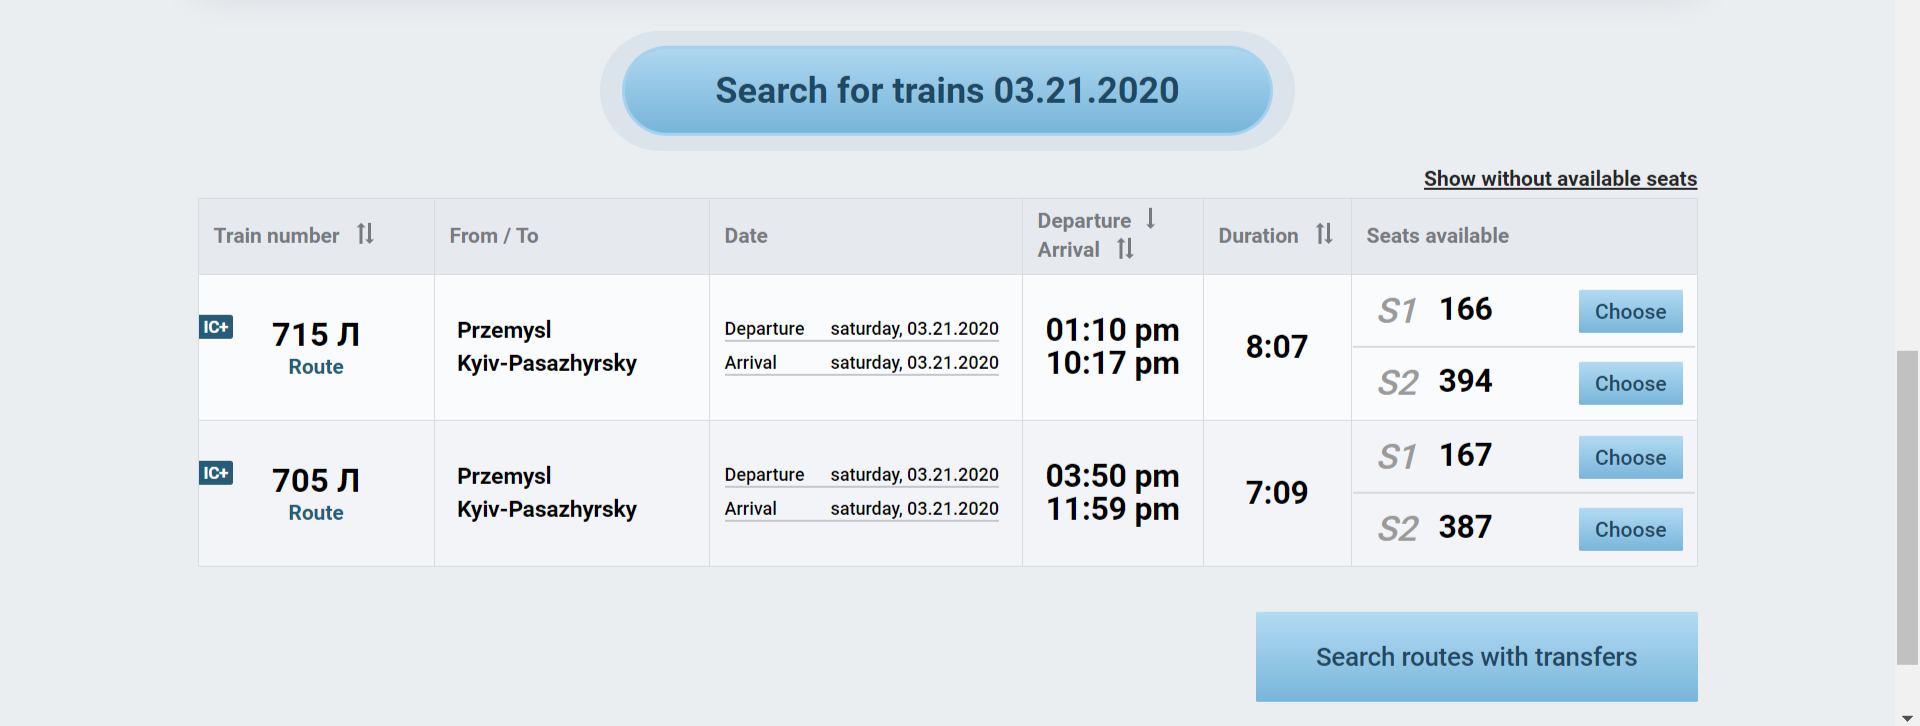 Два додаткові потяги поїдуть завтра з Перемишля до Львова та Києва img 20200320 121312